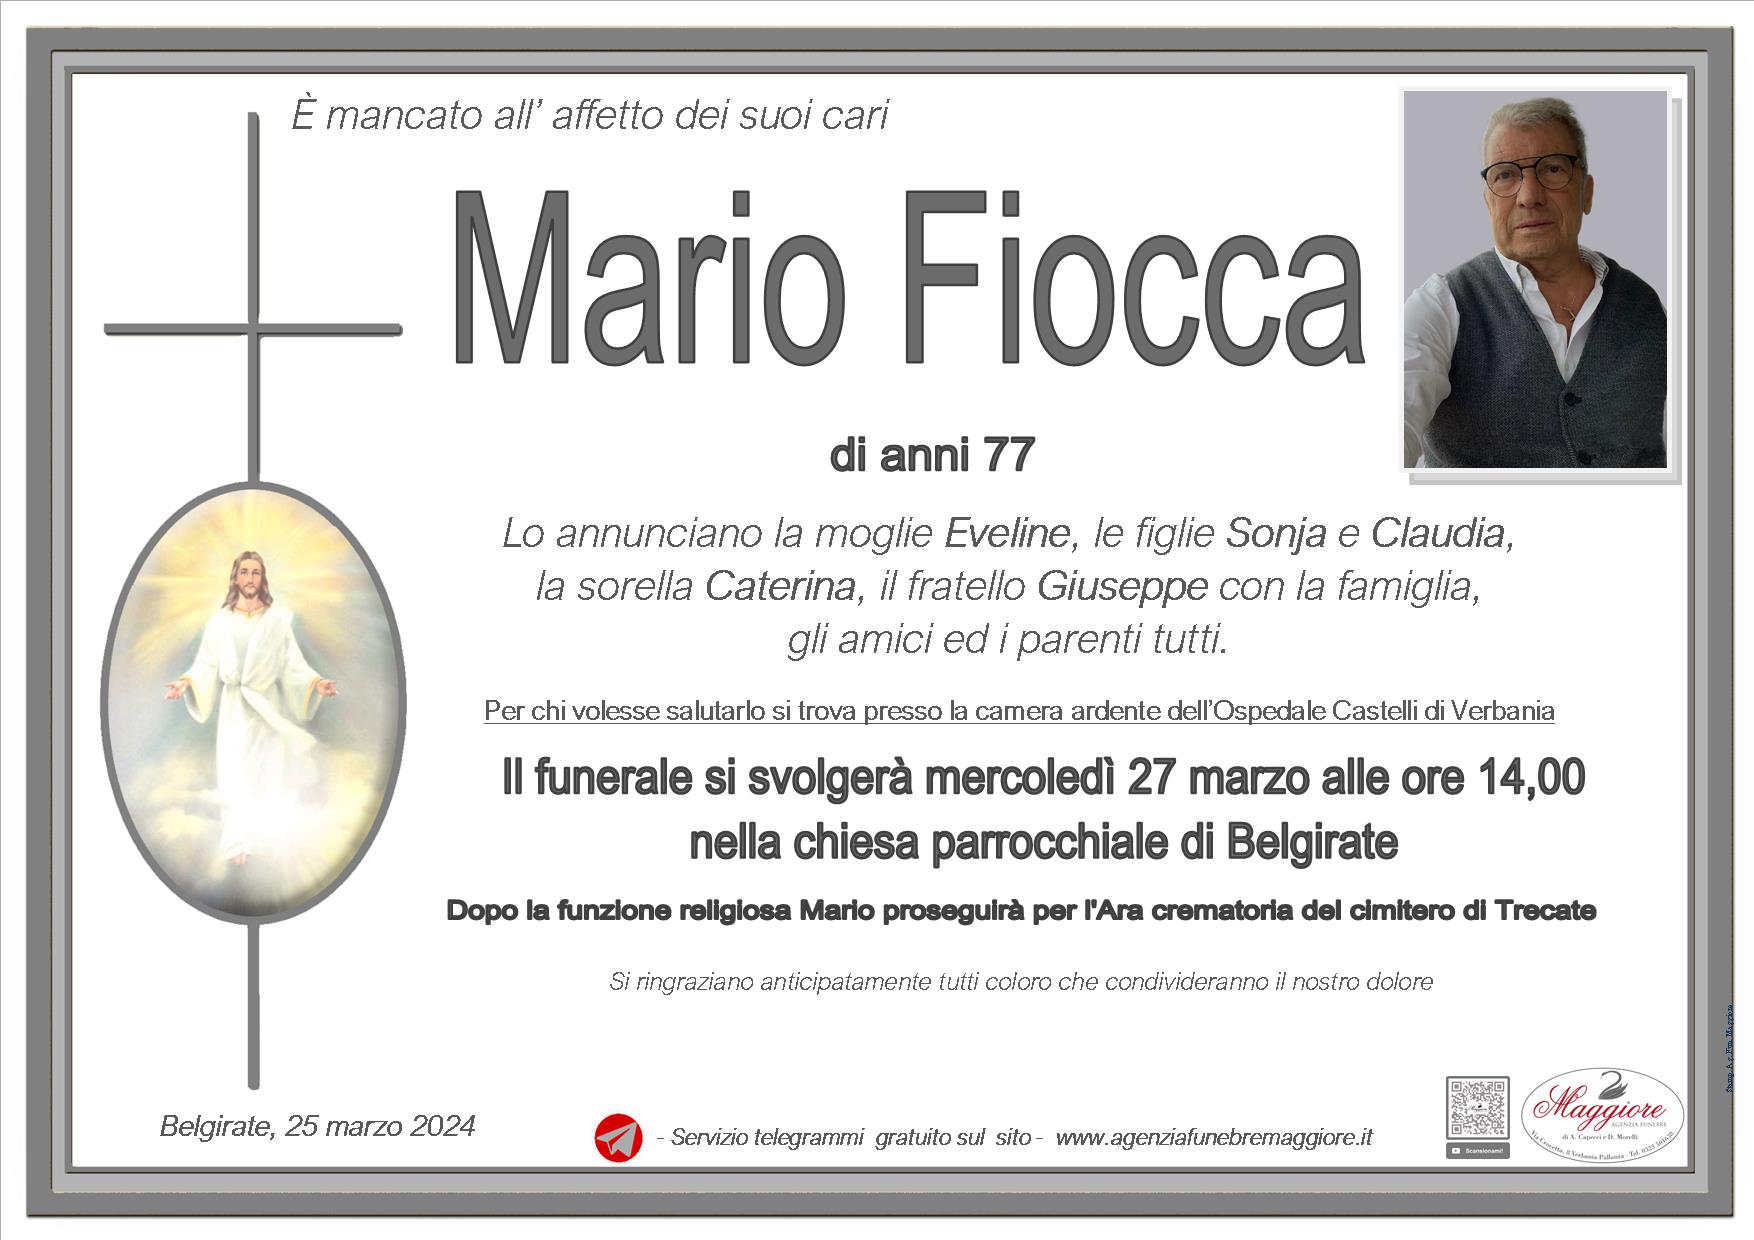 Mario Fiocca